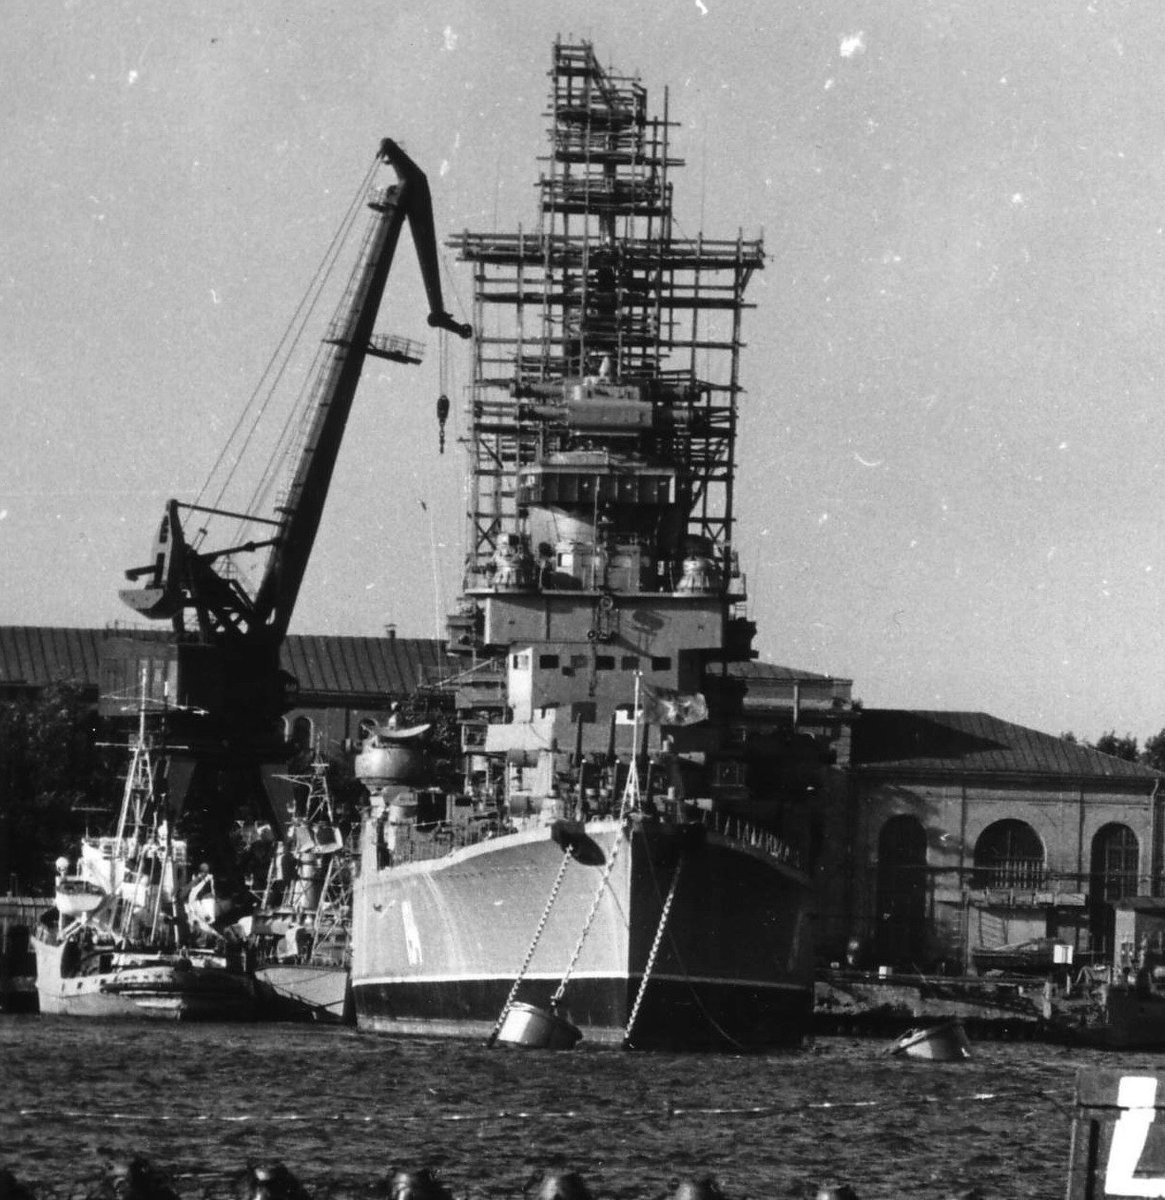 ソ連海軍68bis型軽巡洋艦(スヴェルドロフ型巡洋艦)の一覧